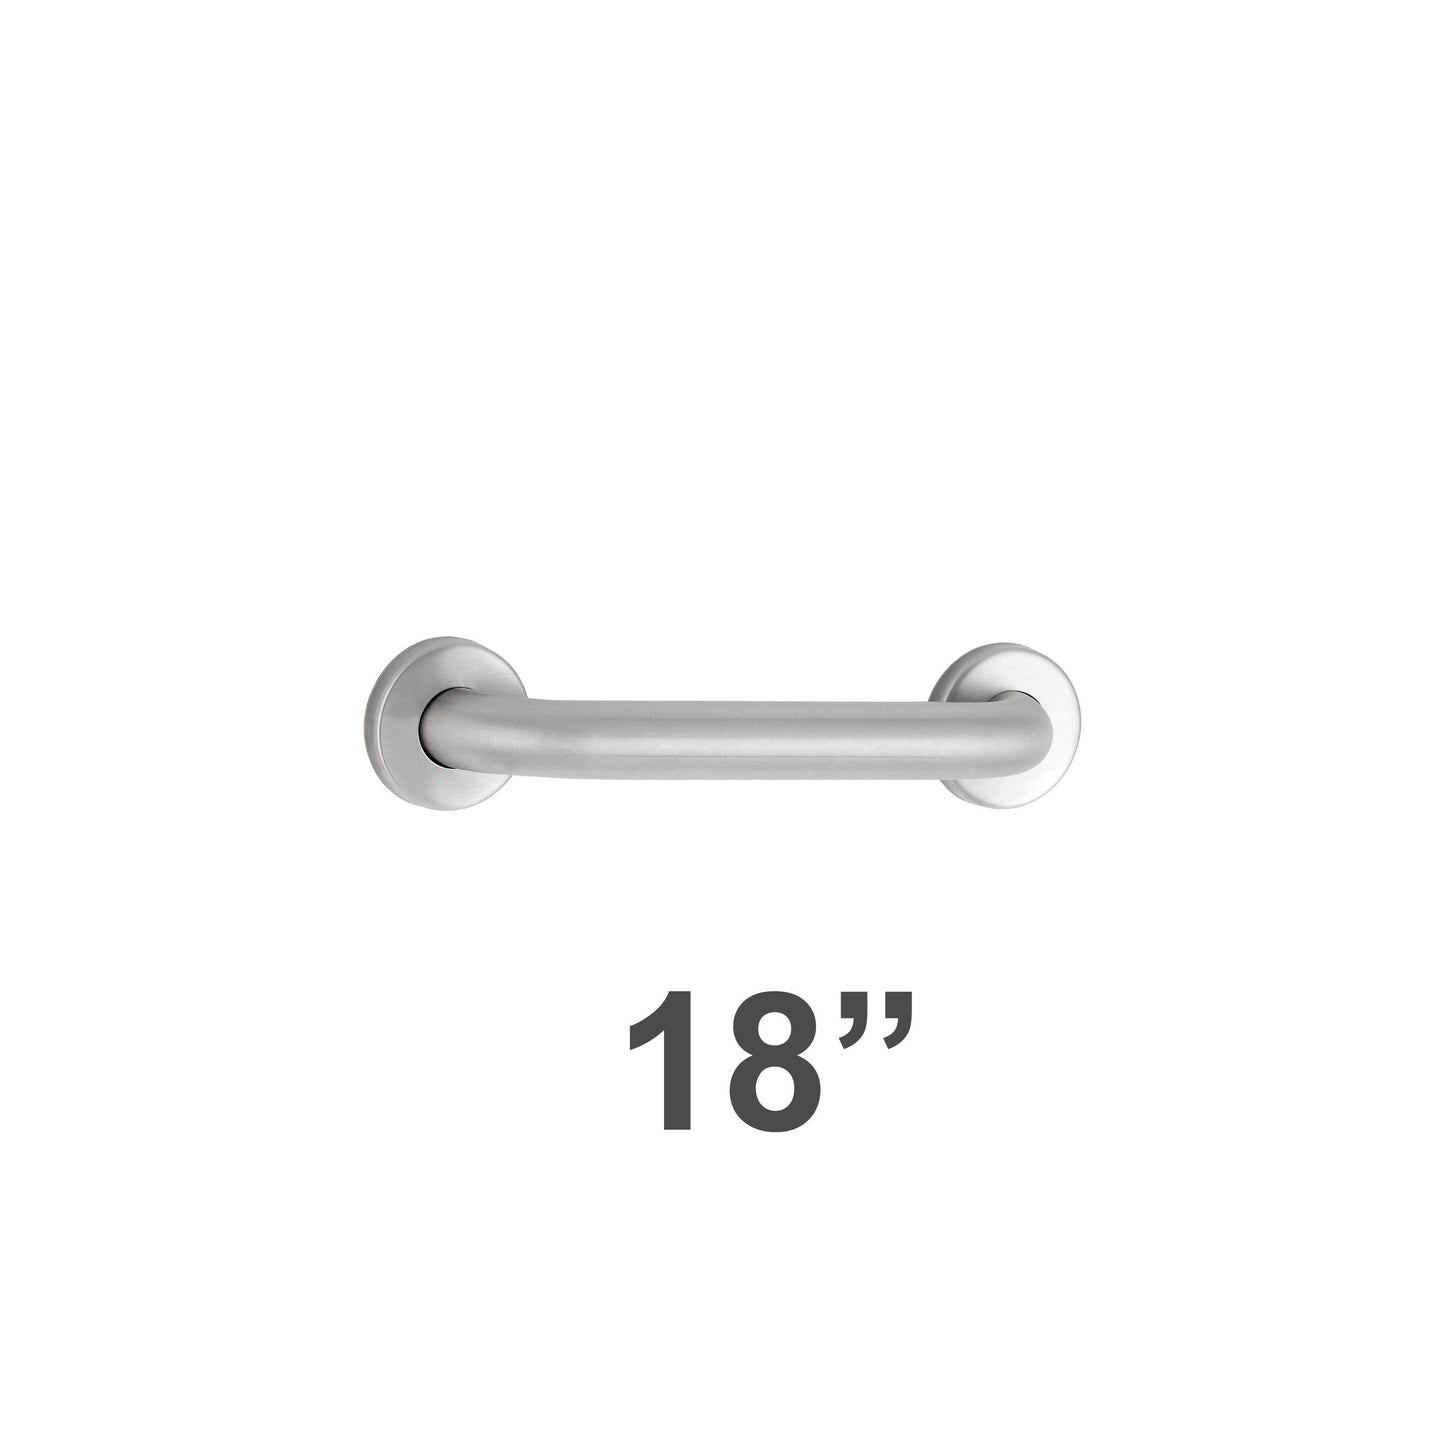 Bobrick 5806x18 - 1-1/4" Diameter 18" Length Straight Grab Bar in Satin Stainless Steel